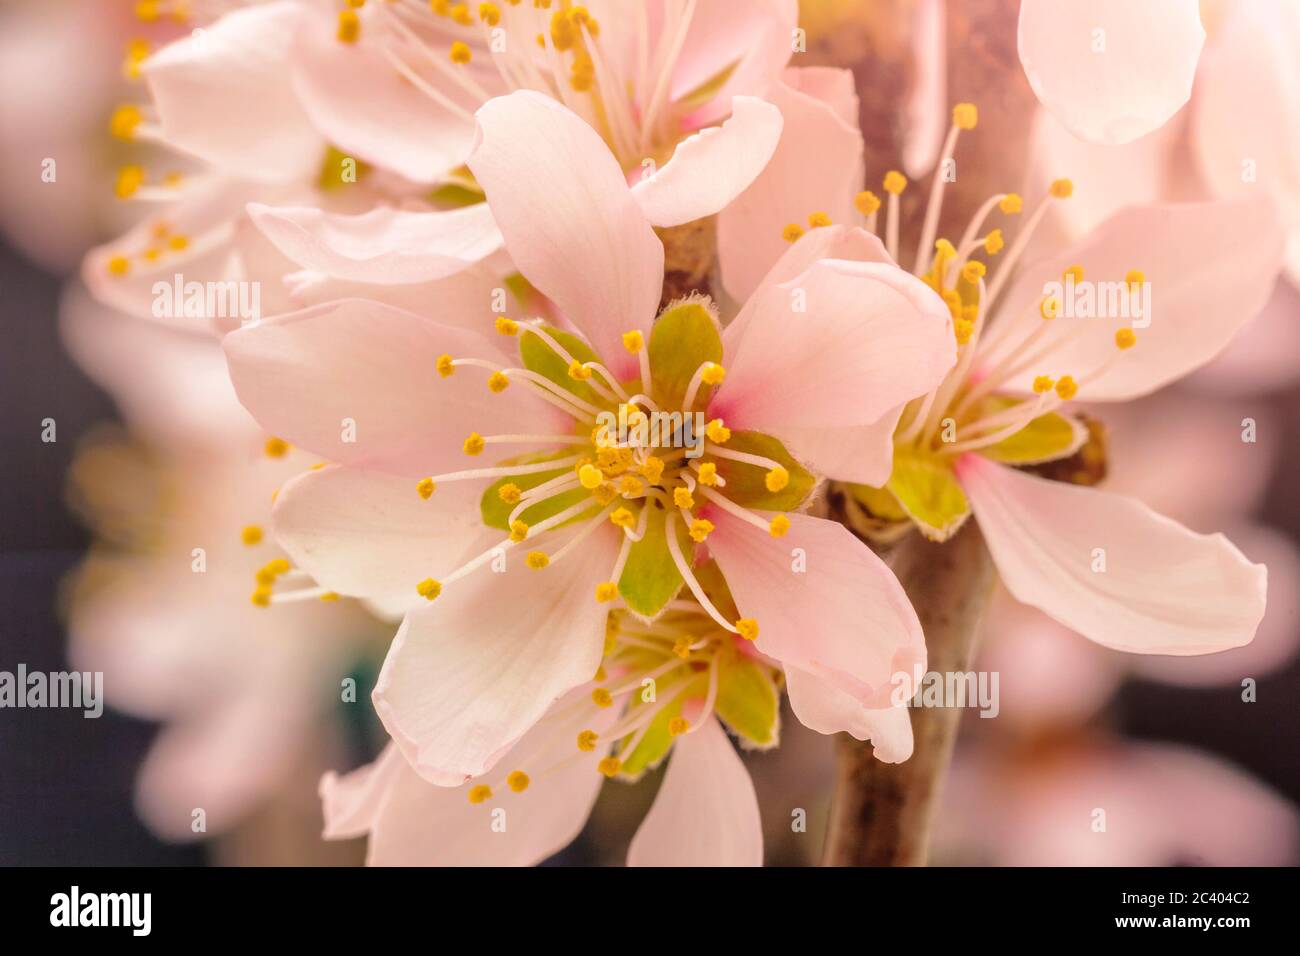 Aprikosenfrucht ree Blume Blüte und Blüte auf einem floralen Hintergrund, Makro-Aufnahme. Stockfoto